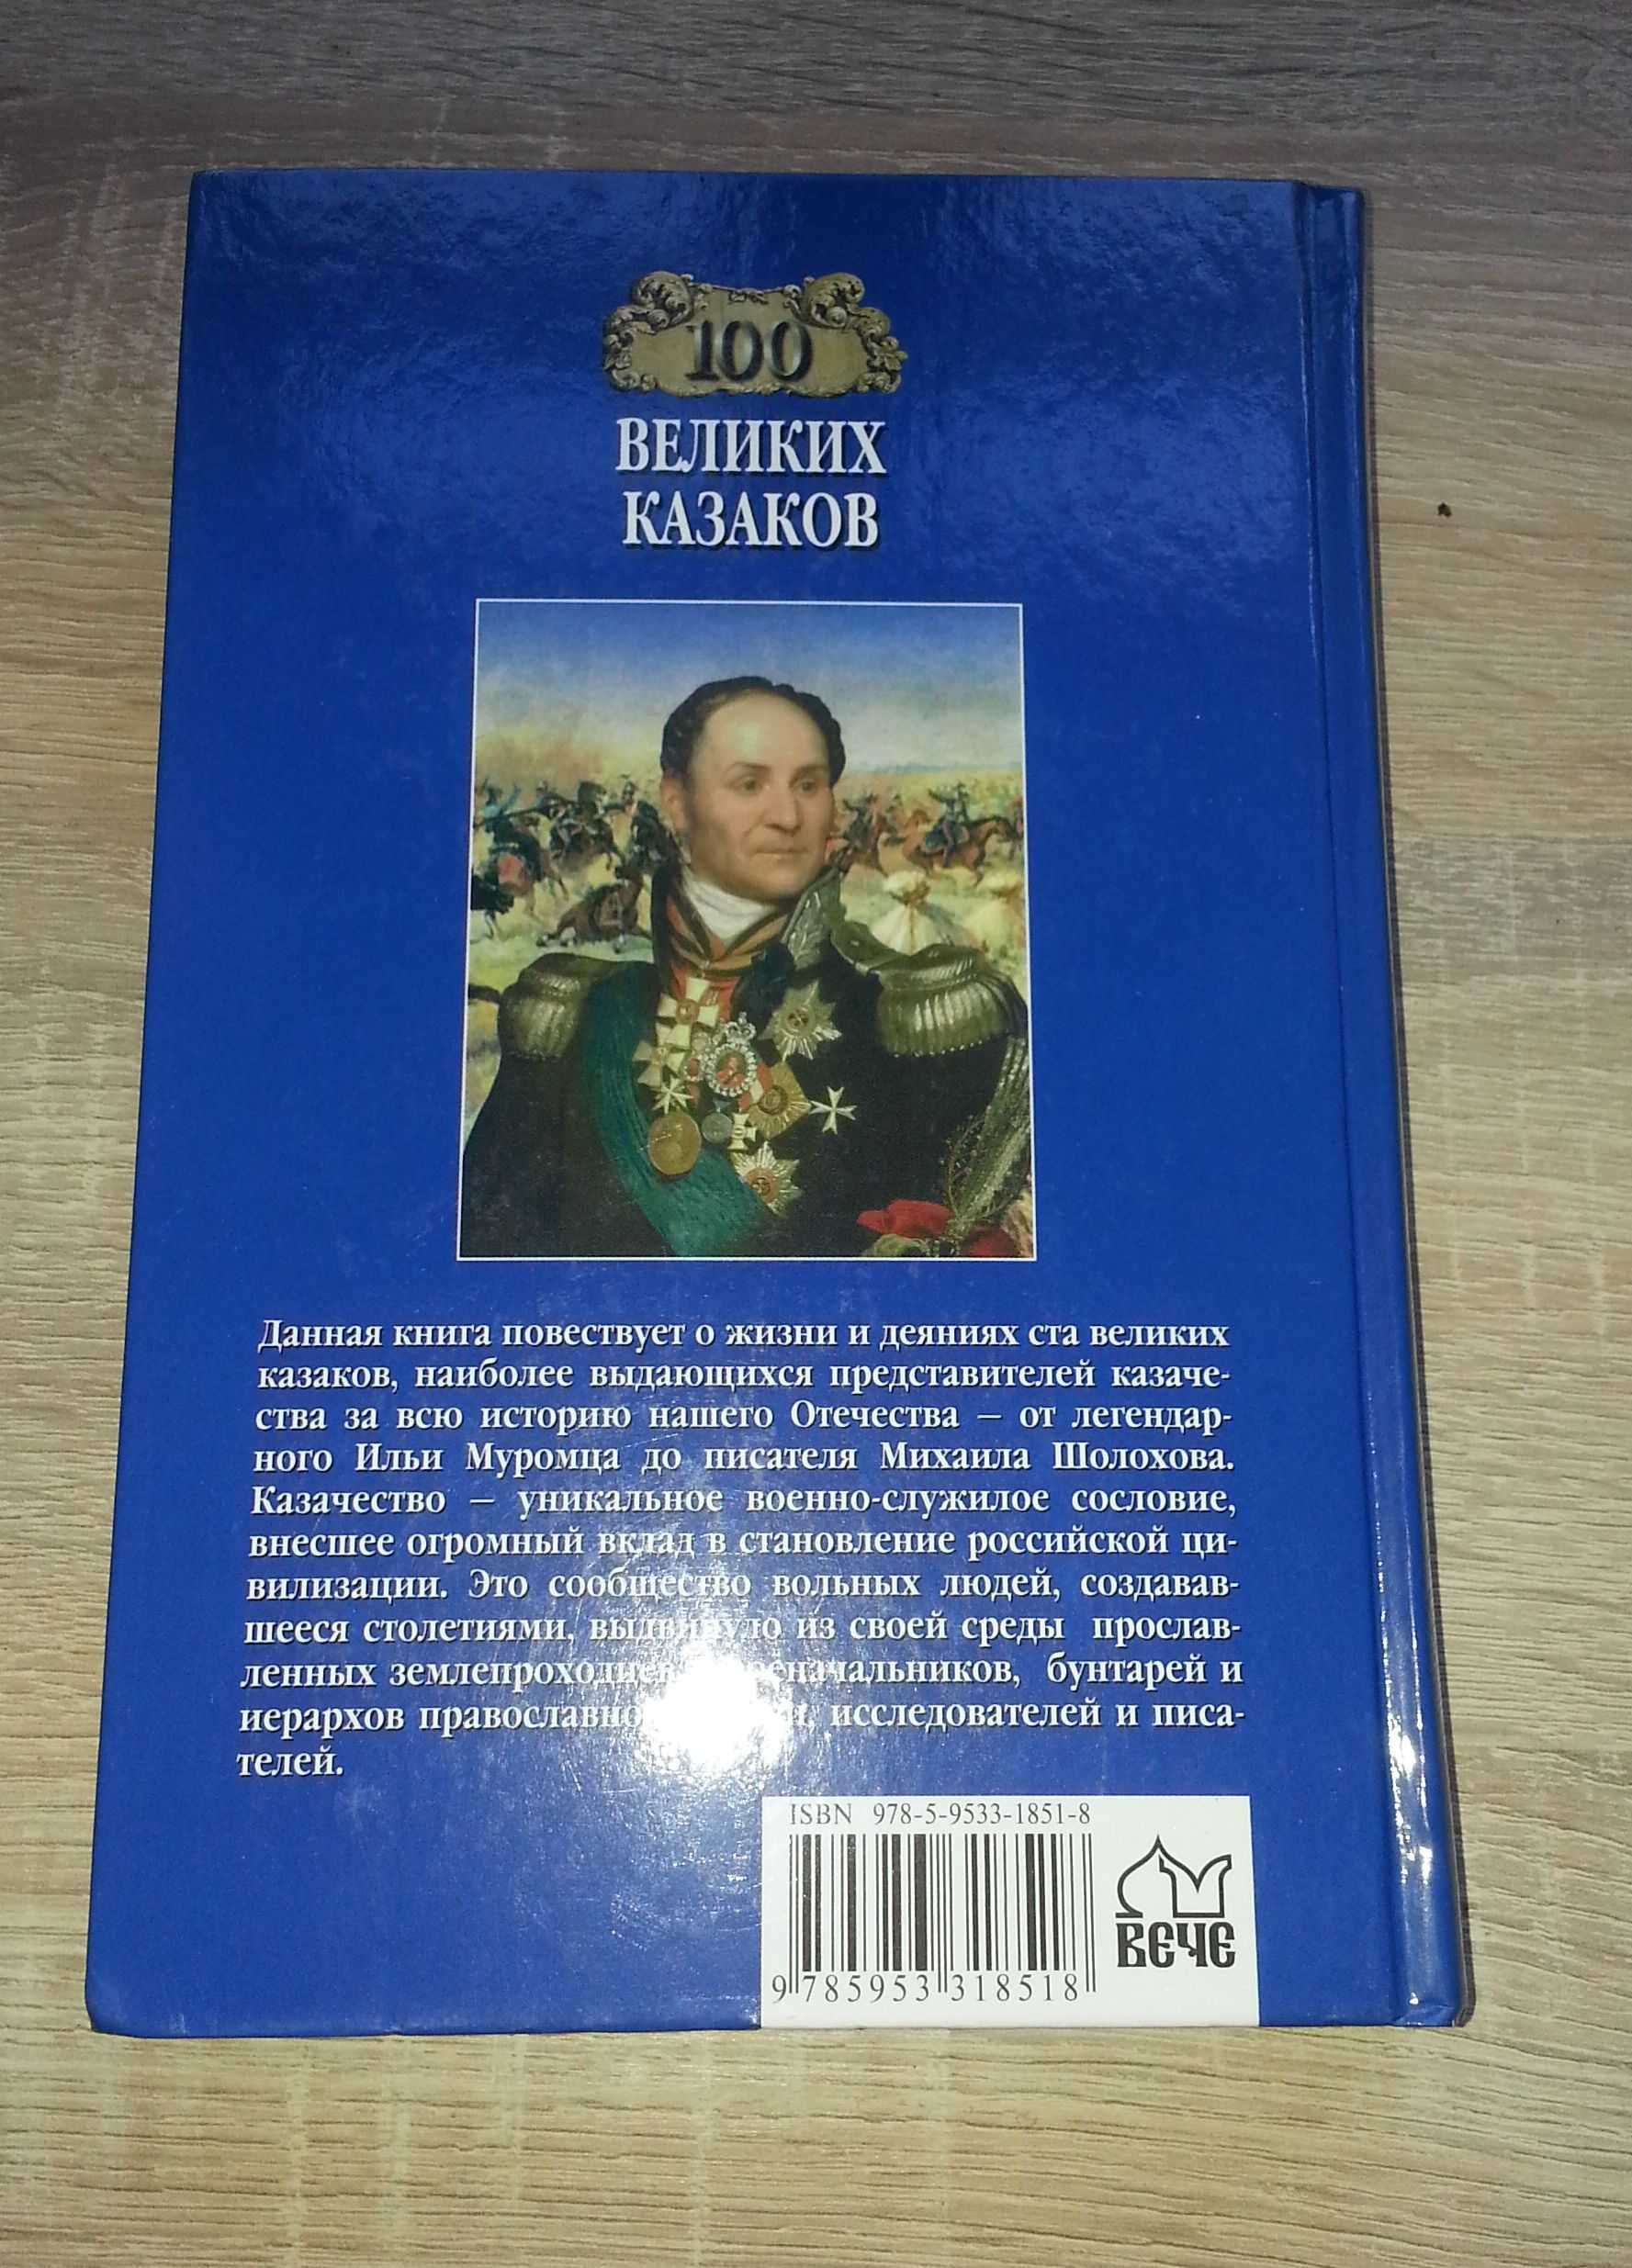 Книга "100 великих казаков" из серии "100 великих" издательства Вече